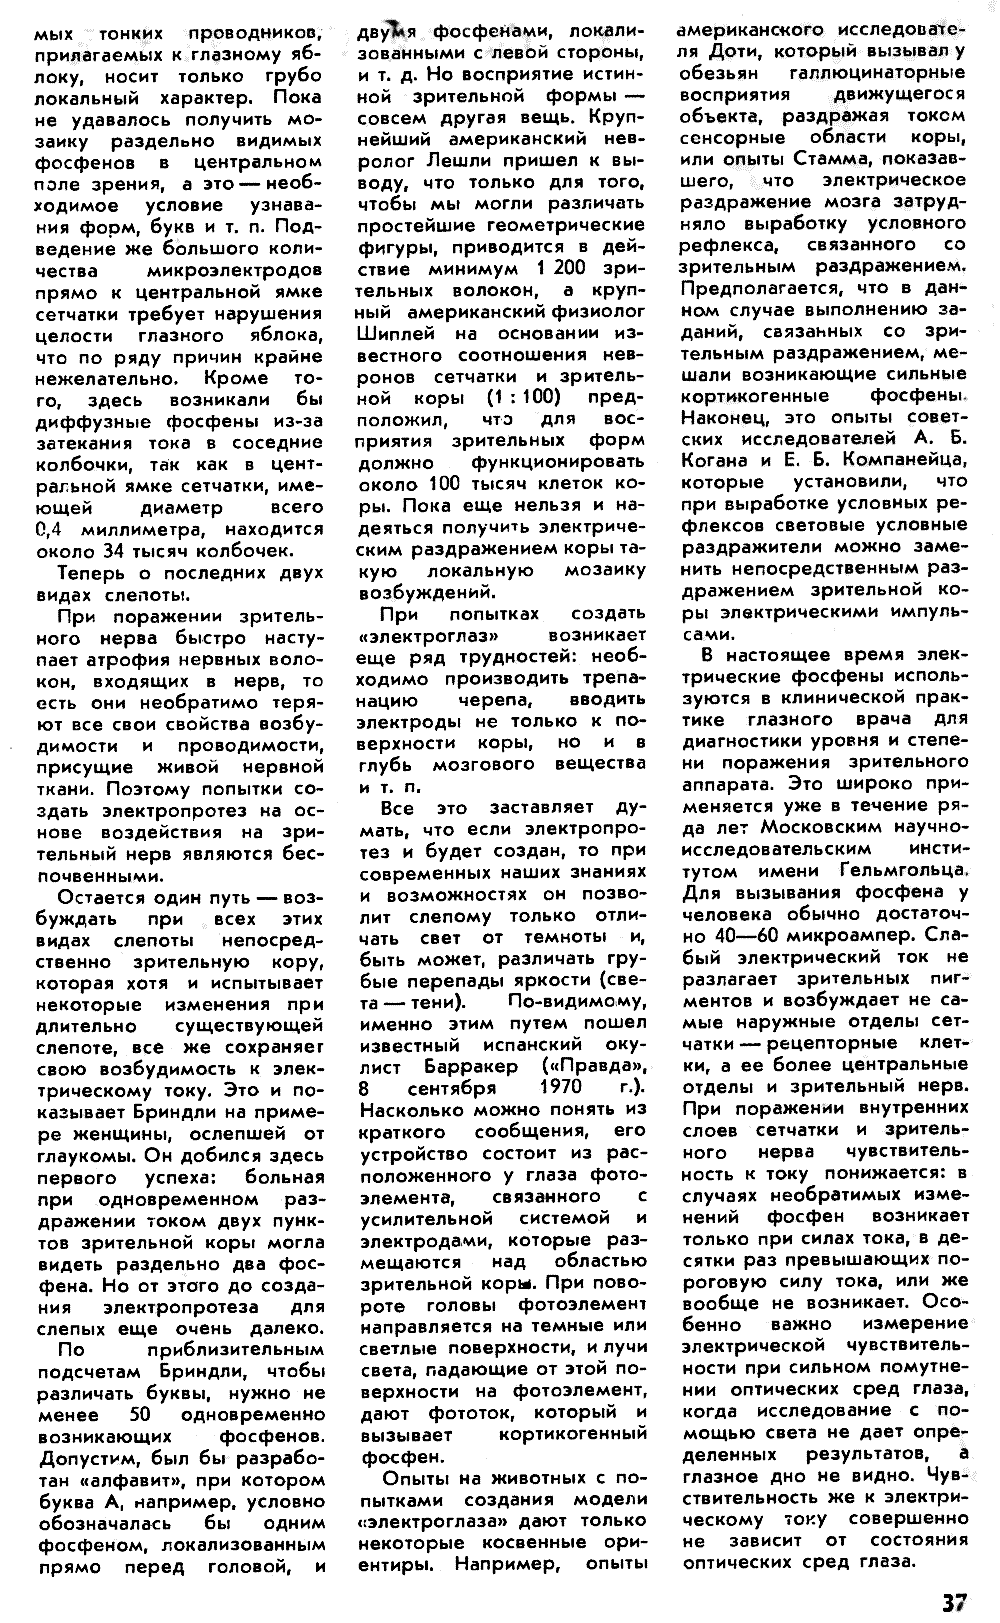 Фосфены. Г. Остер. Наука и жизнь, 1971, №4, с.33-37 (вкладка). Фотокопия №6